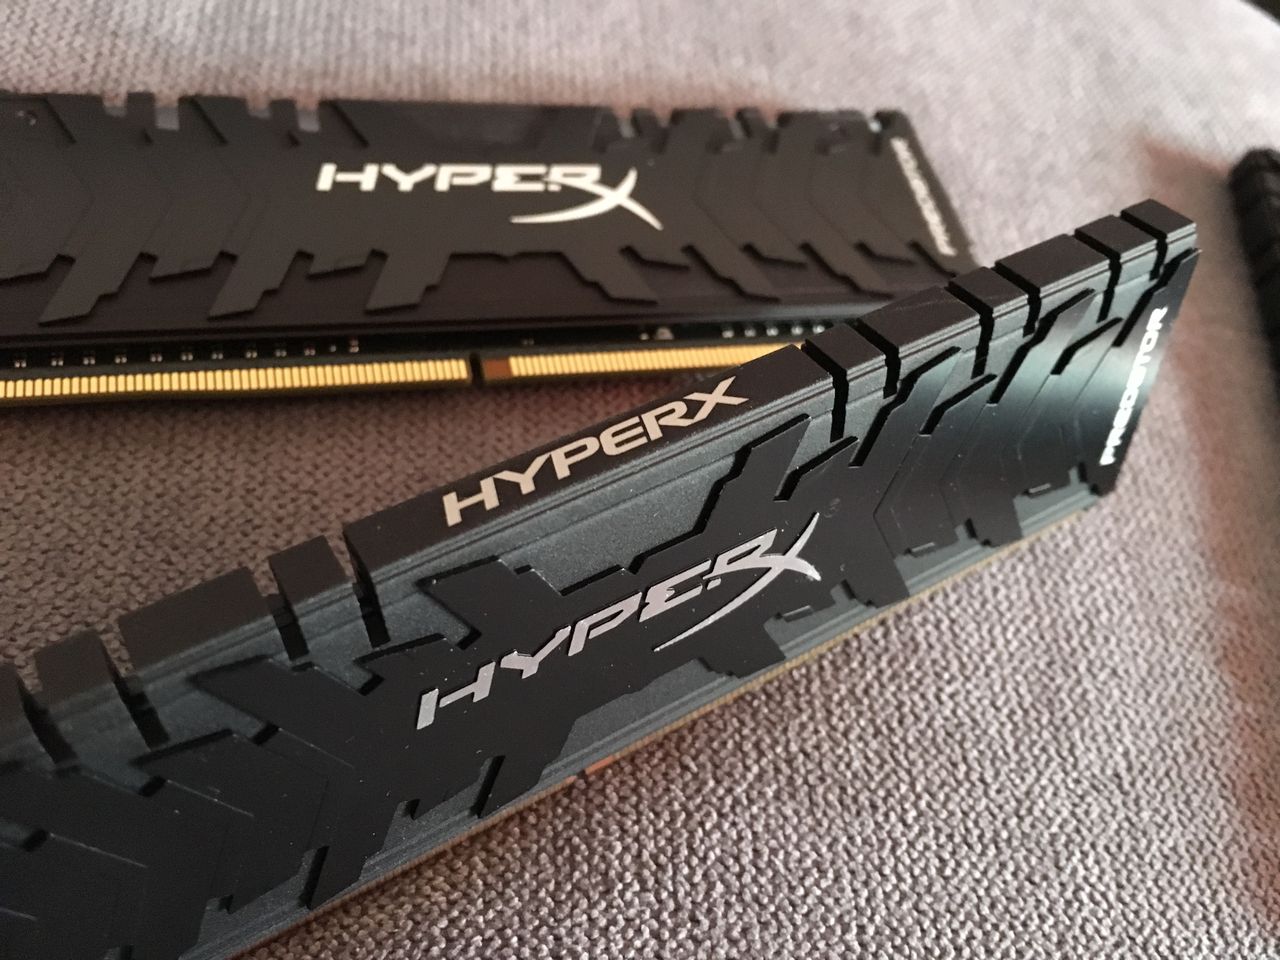 HyperX Predator DDR4 RGB, czyli wydajna pamięć z RGB